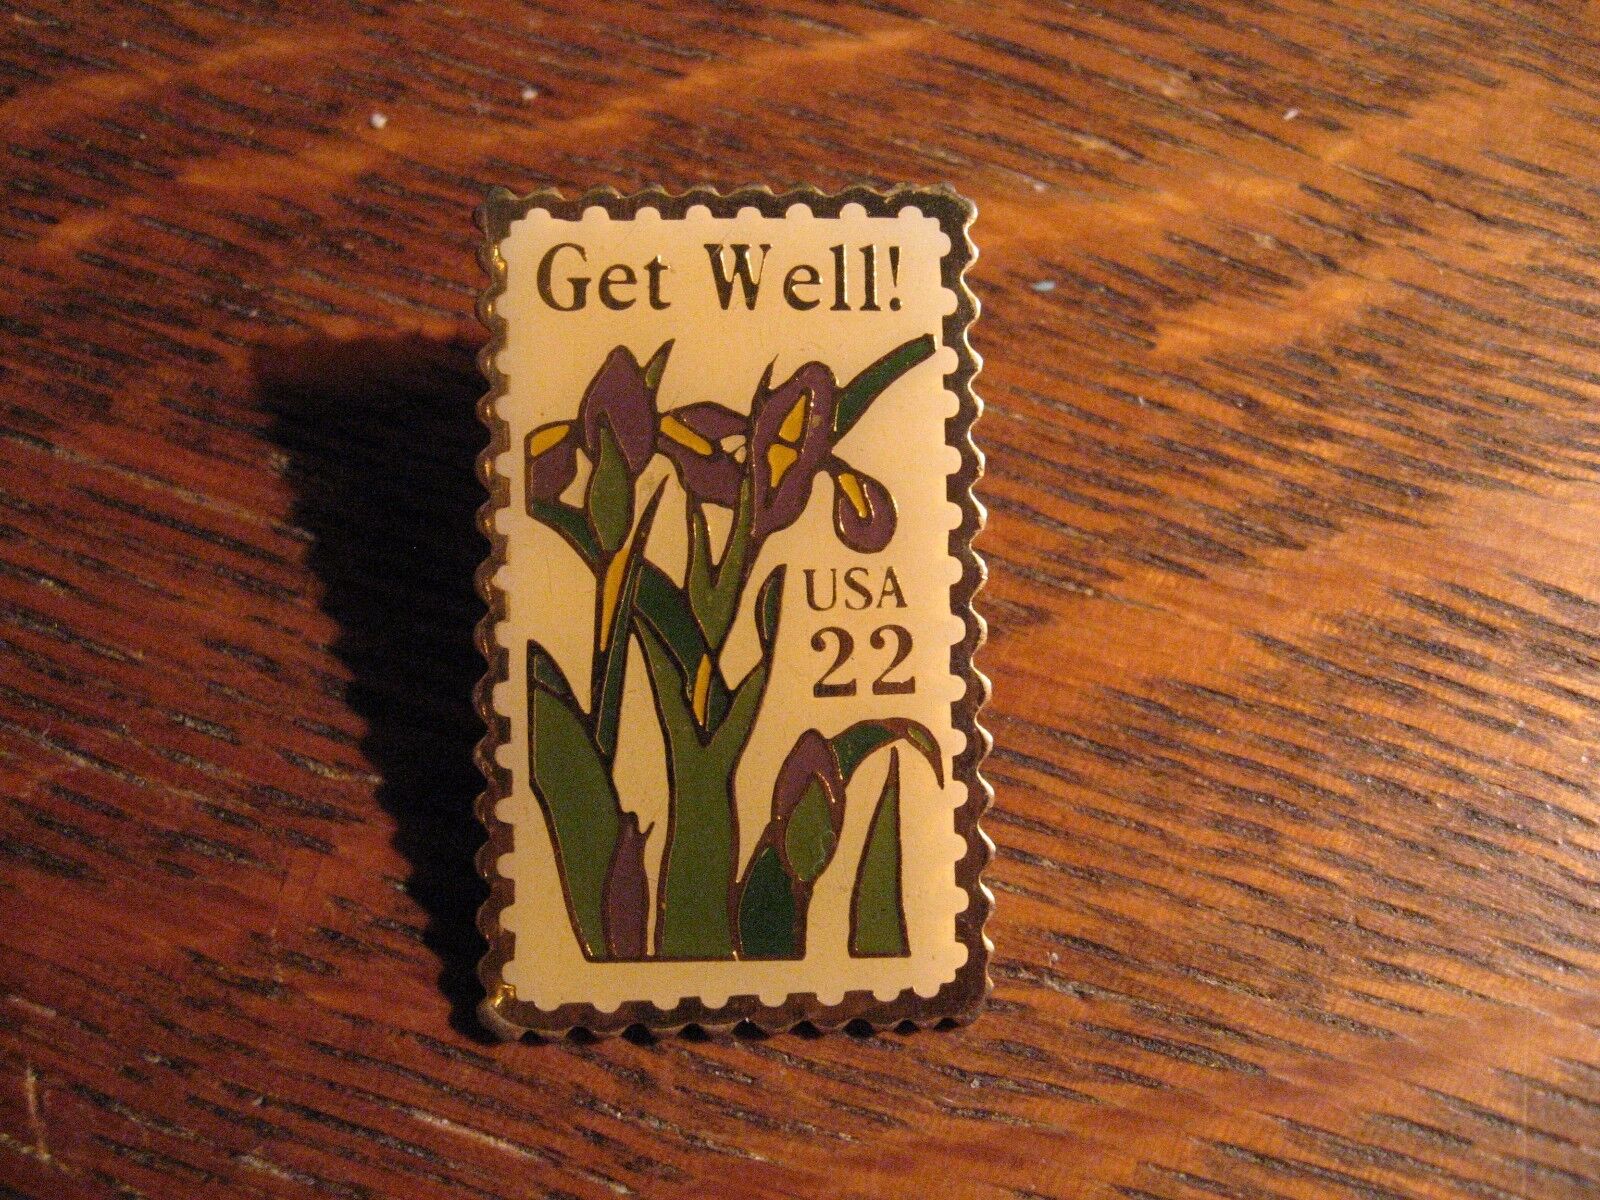 Get Well USA Postage Stamp Pin - Vintage 1987 Jonathan Grey & Associates Pin